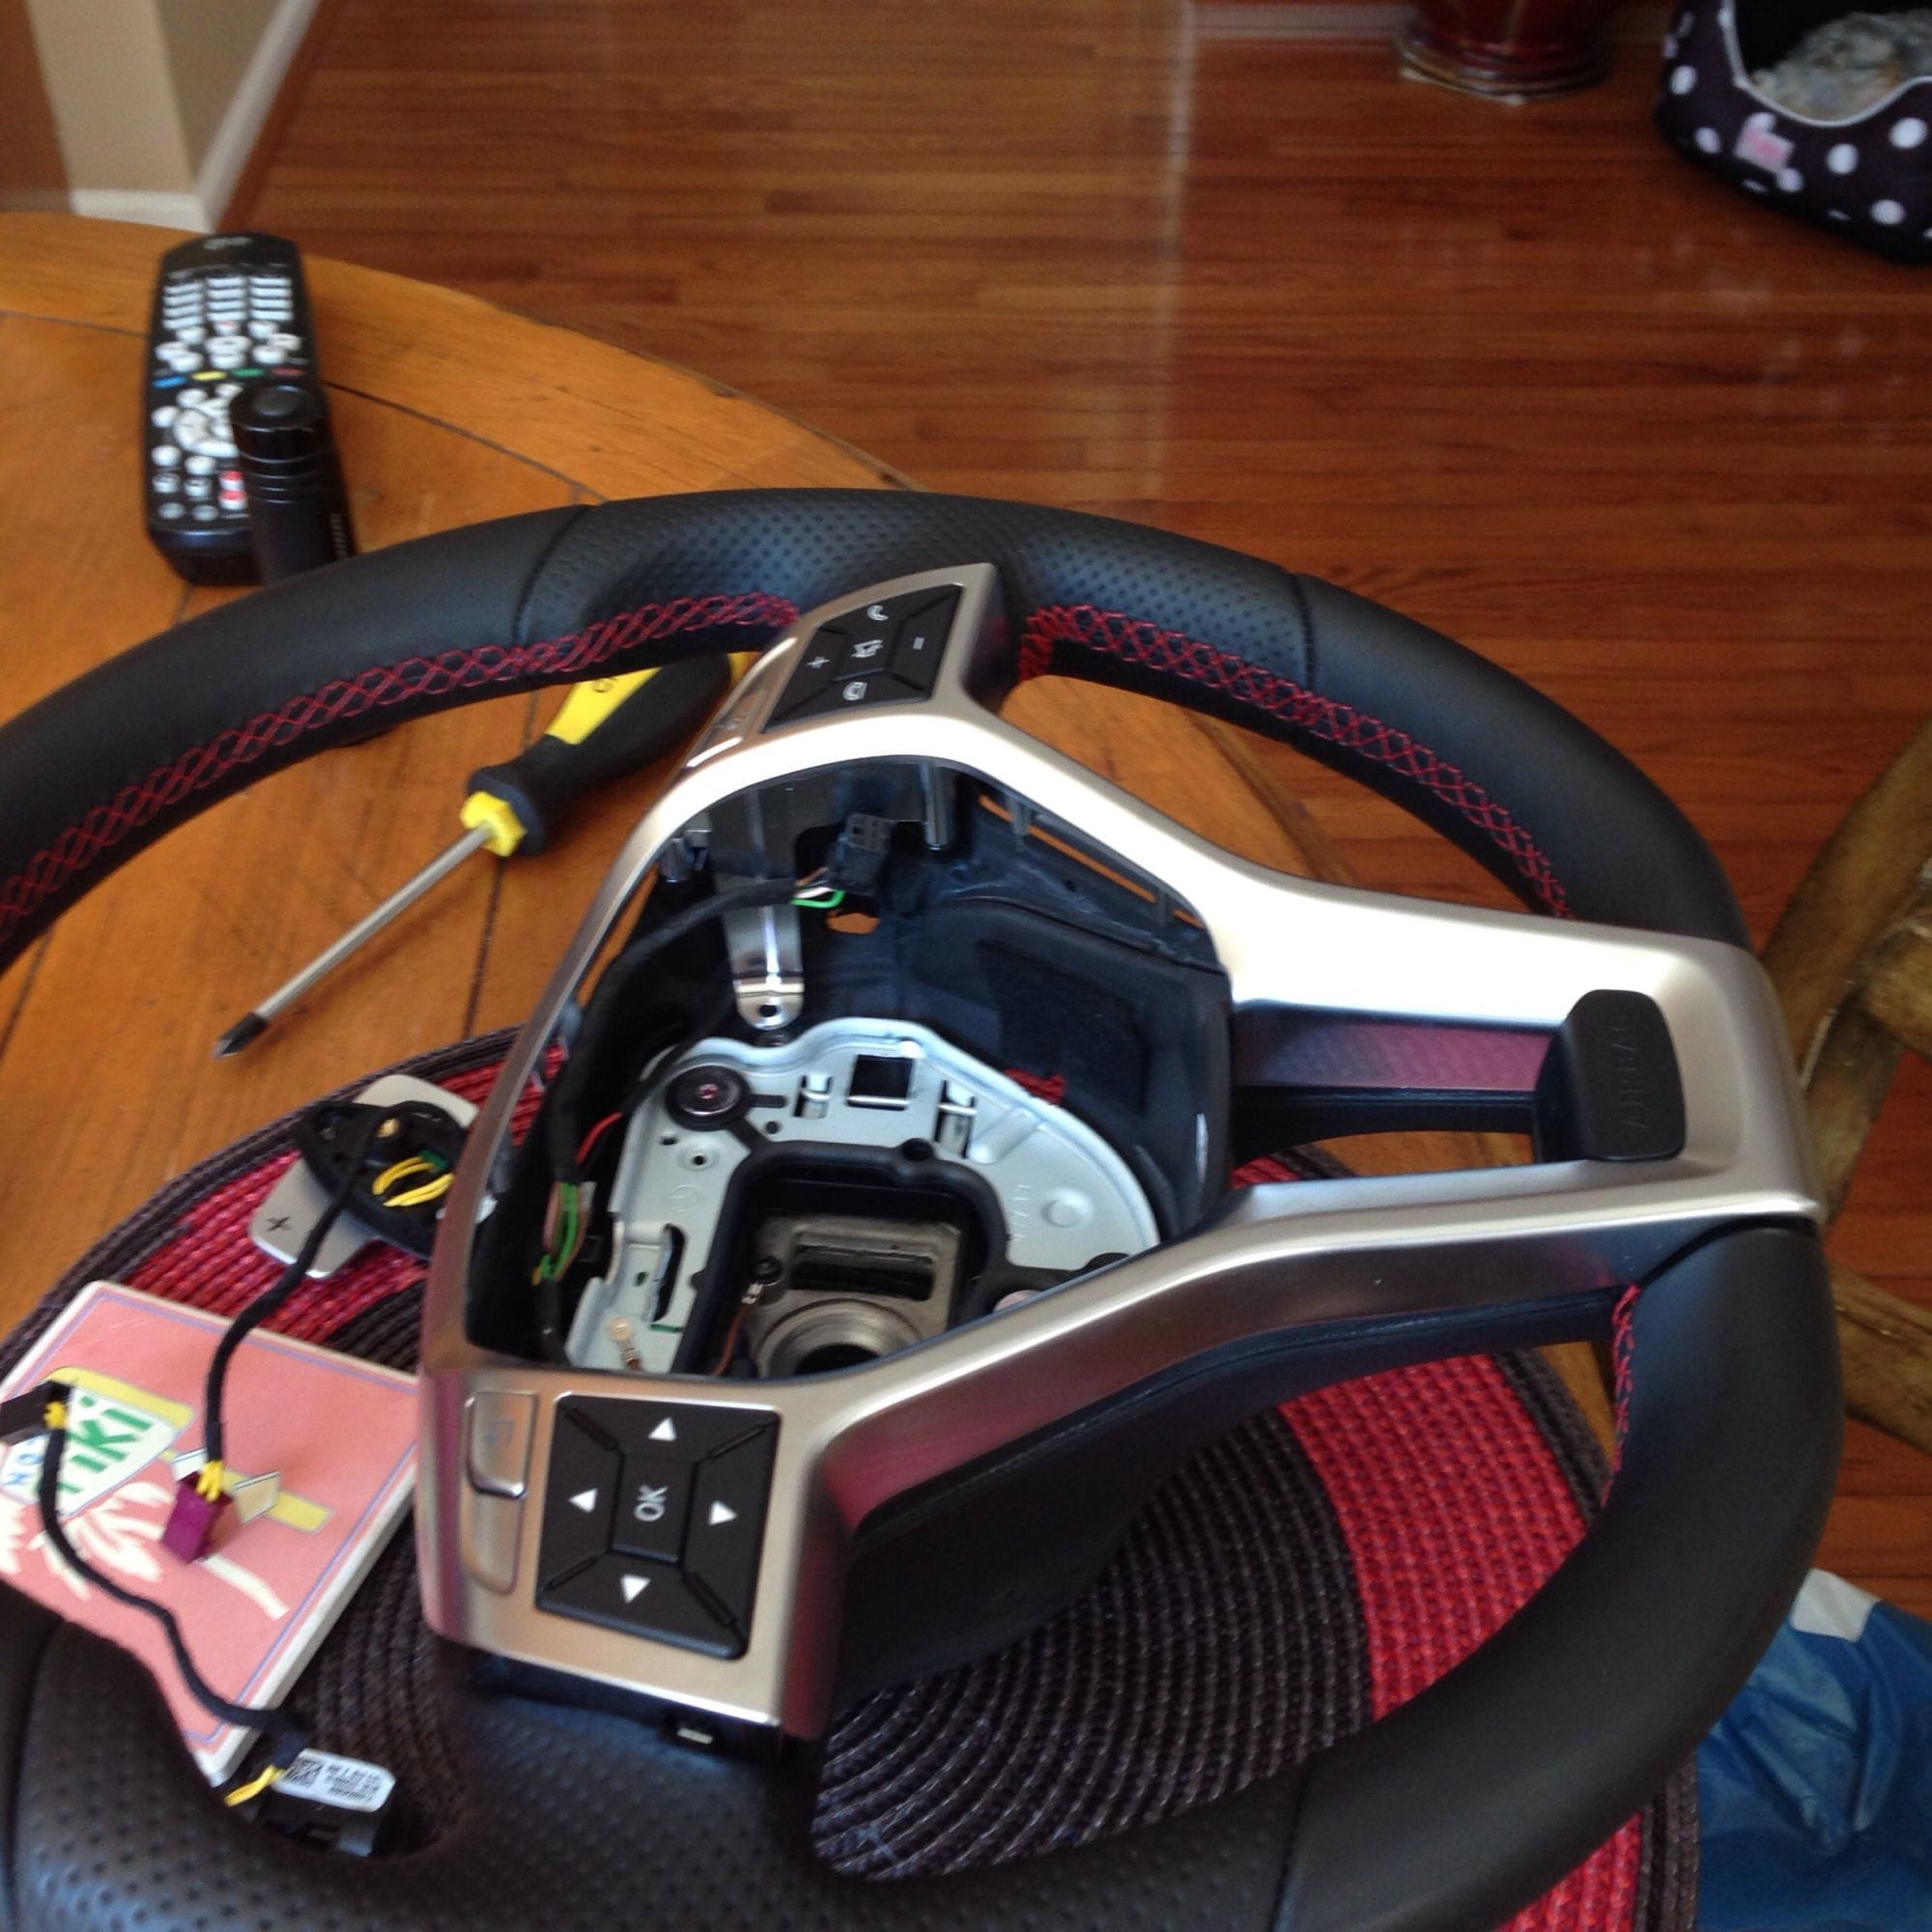 Steering/Suspension - Red Stitched oem steering wheel - Used - Ashburn, VA 20147, United States